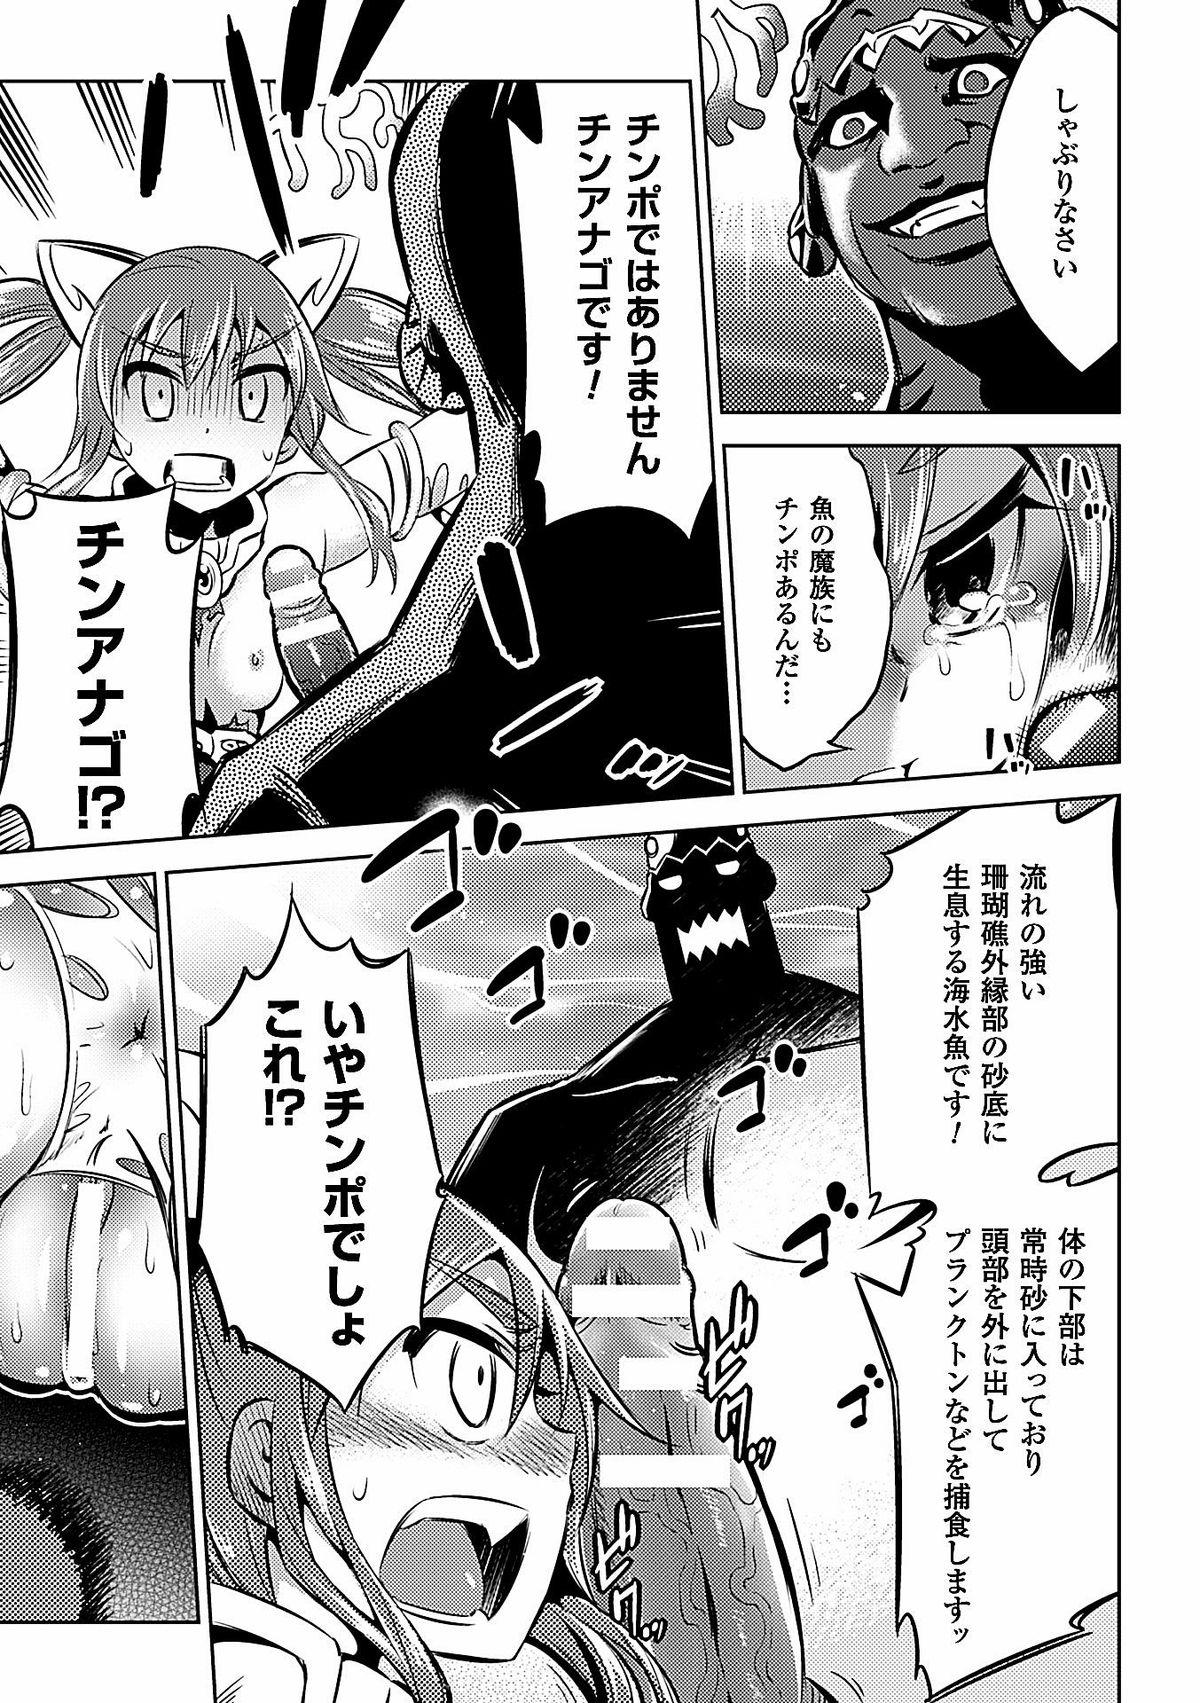 2D Comic Magazine Dengekisemeni Zecchouacmesuru Heroine tachi! Vol.1 37